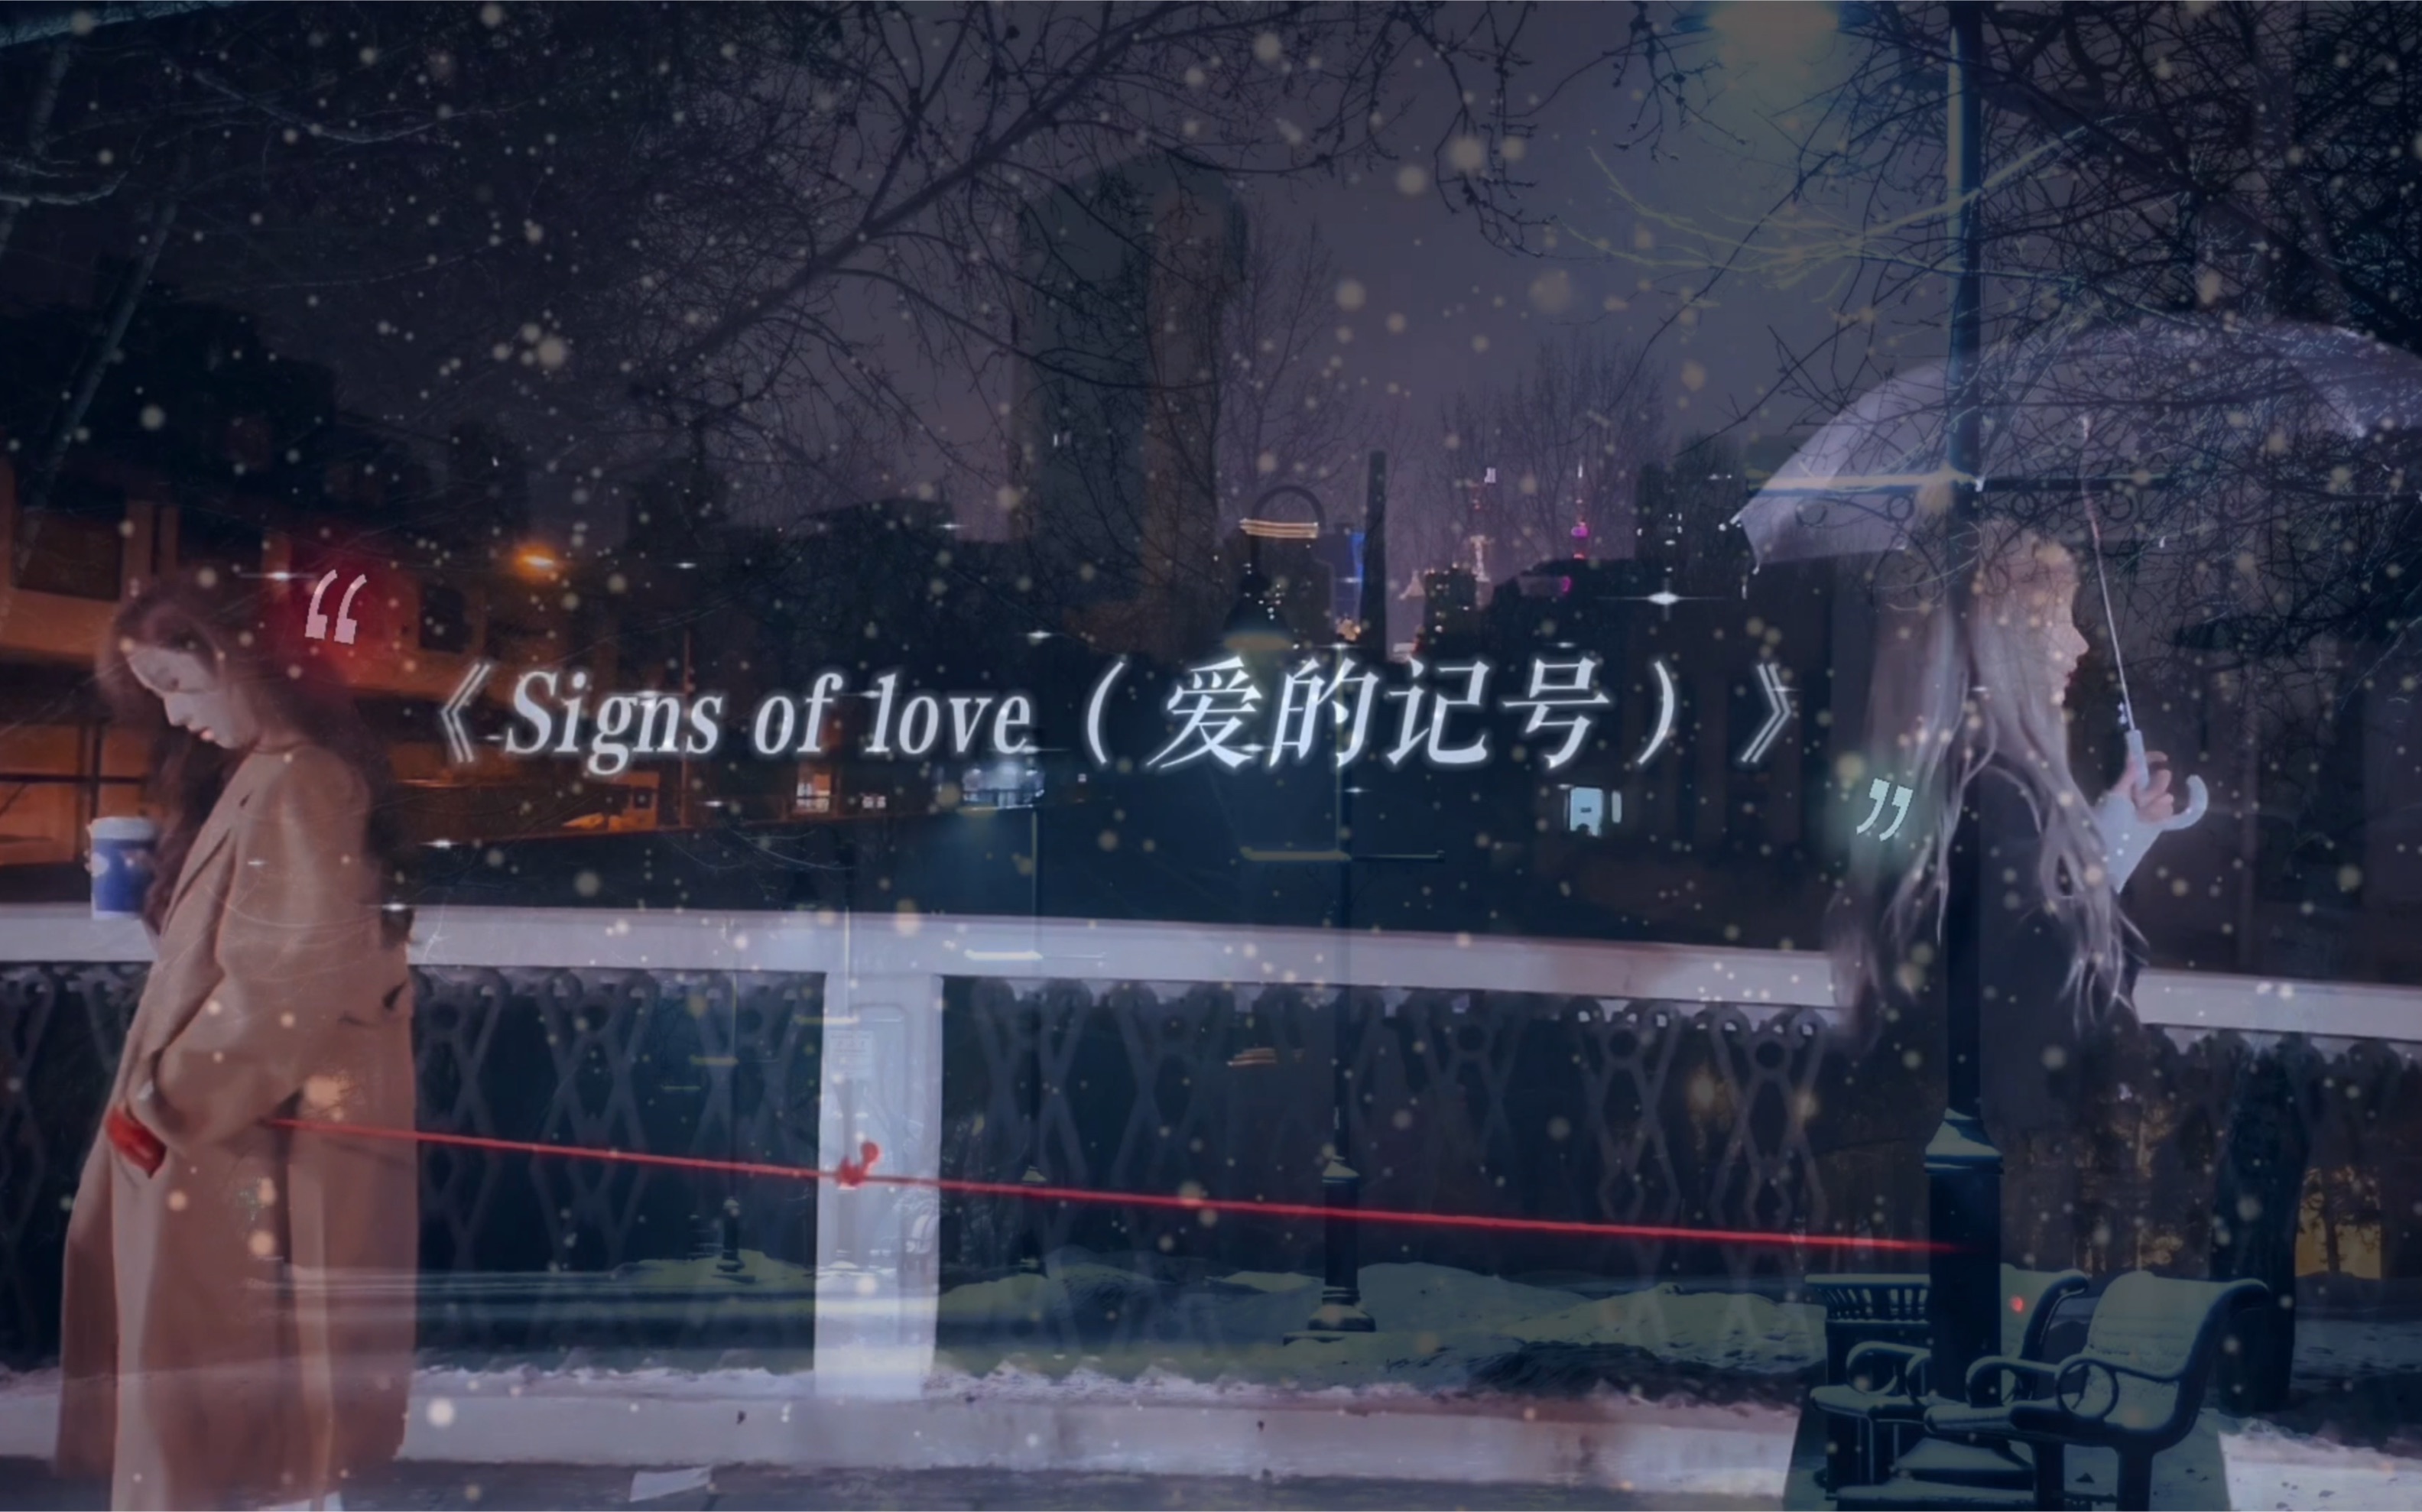 《Signs of love（爱的记号）》 原创｜希望在这个冬天 你能找到和你一起看雪的人